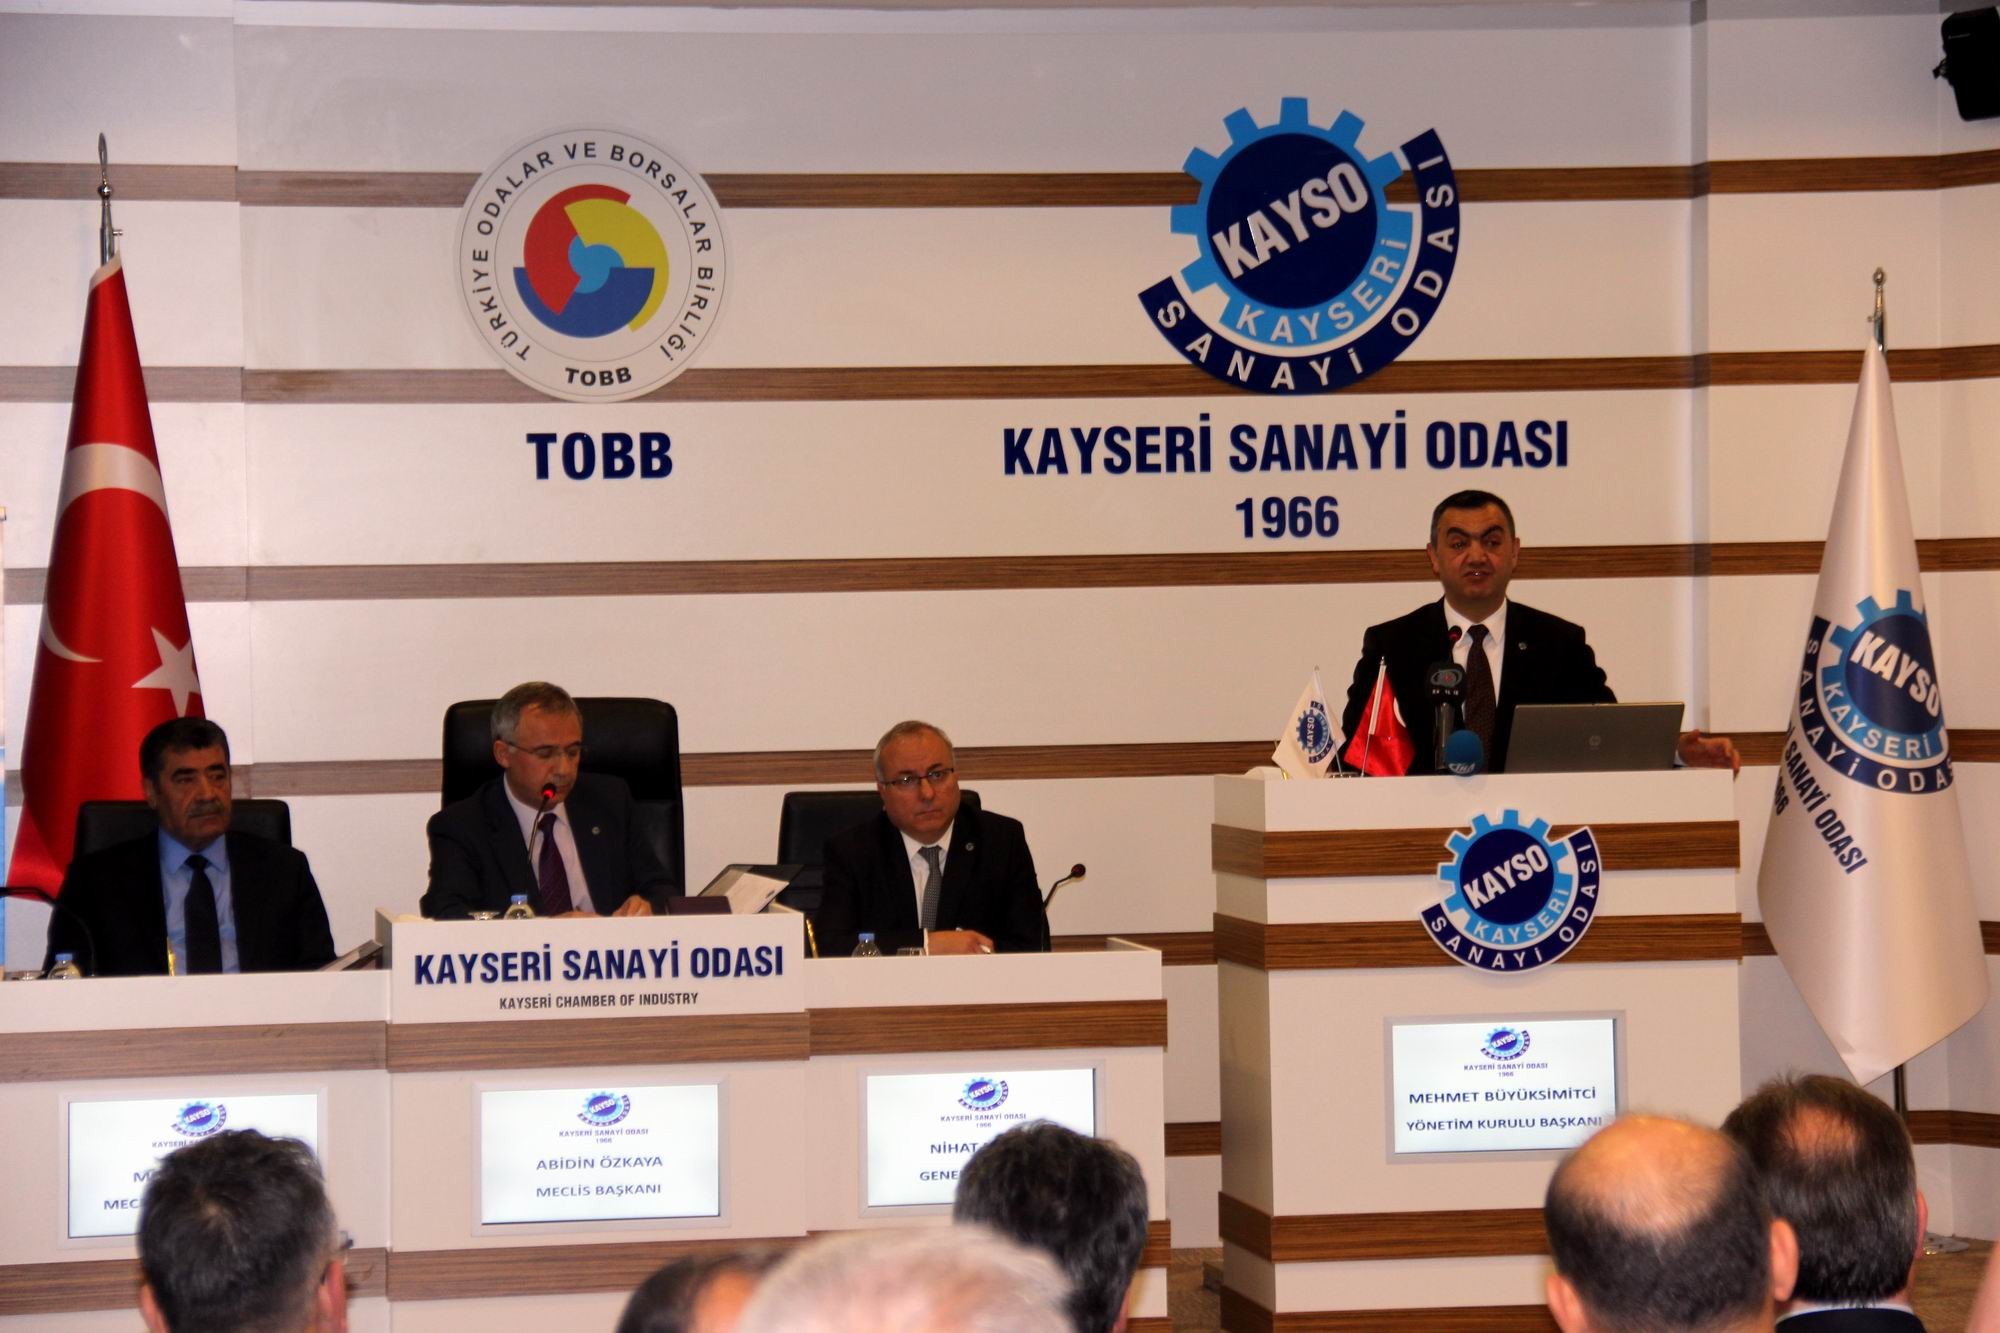 KAYSO Yönetim Kurulu Başkanı Mehmet Büyüksimitçi: “Üniversite-sanayi işbirliğini lafta değil gerçekte oluşturmalıyız”